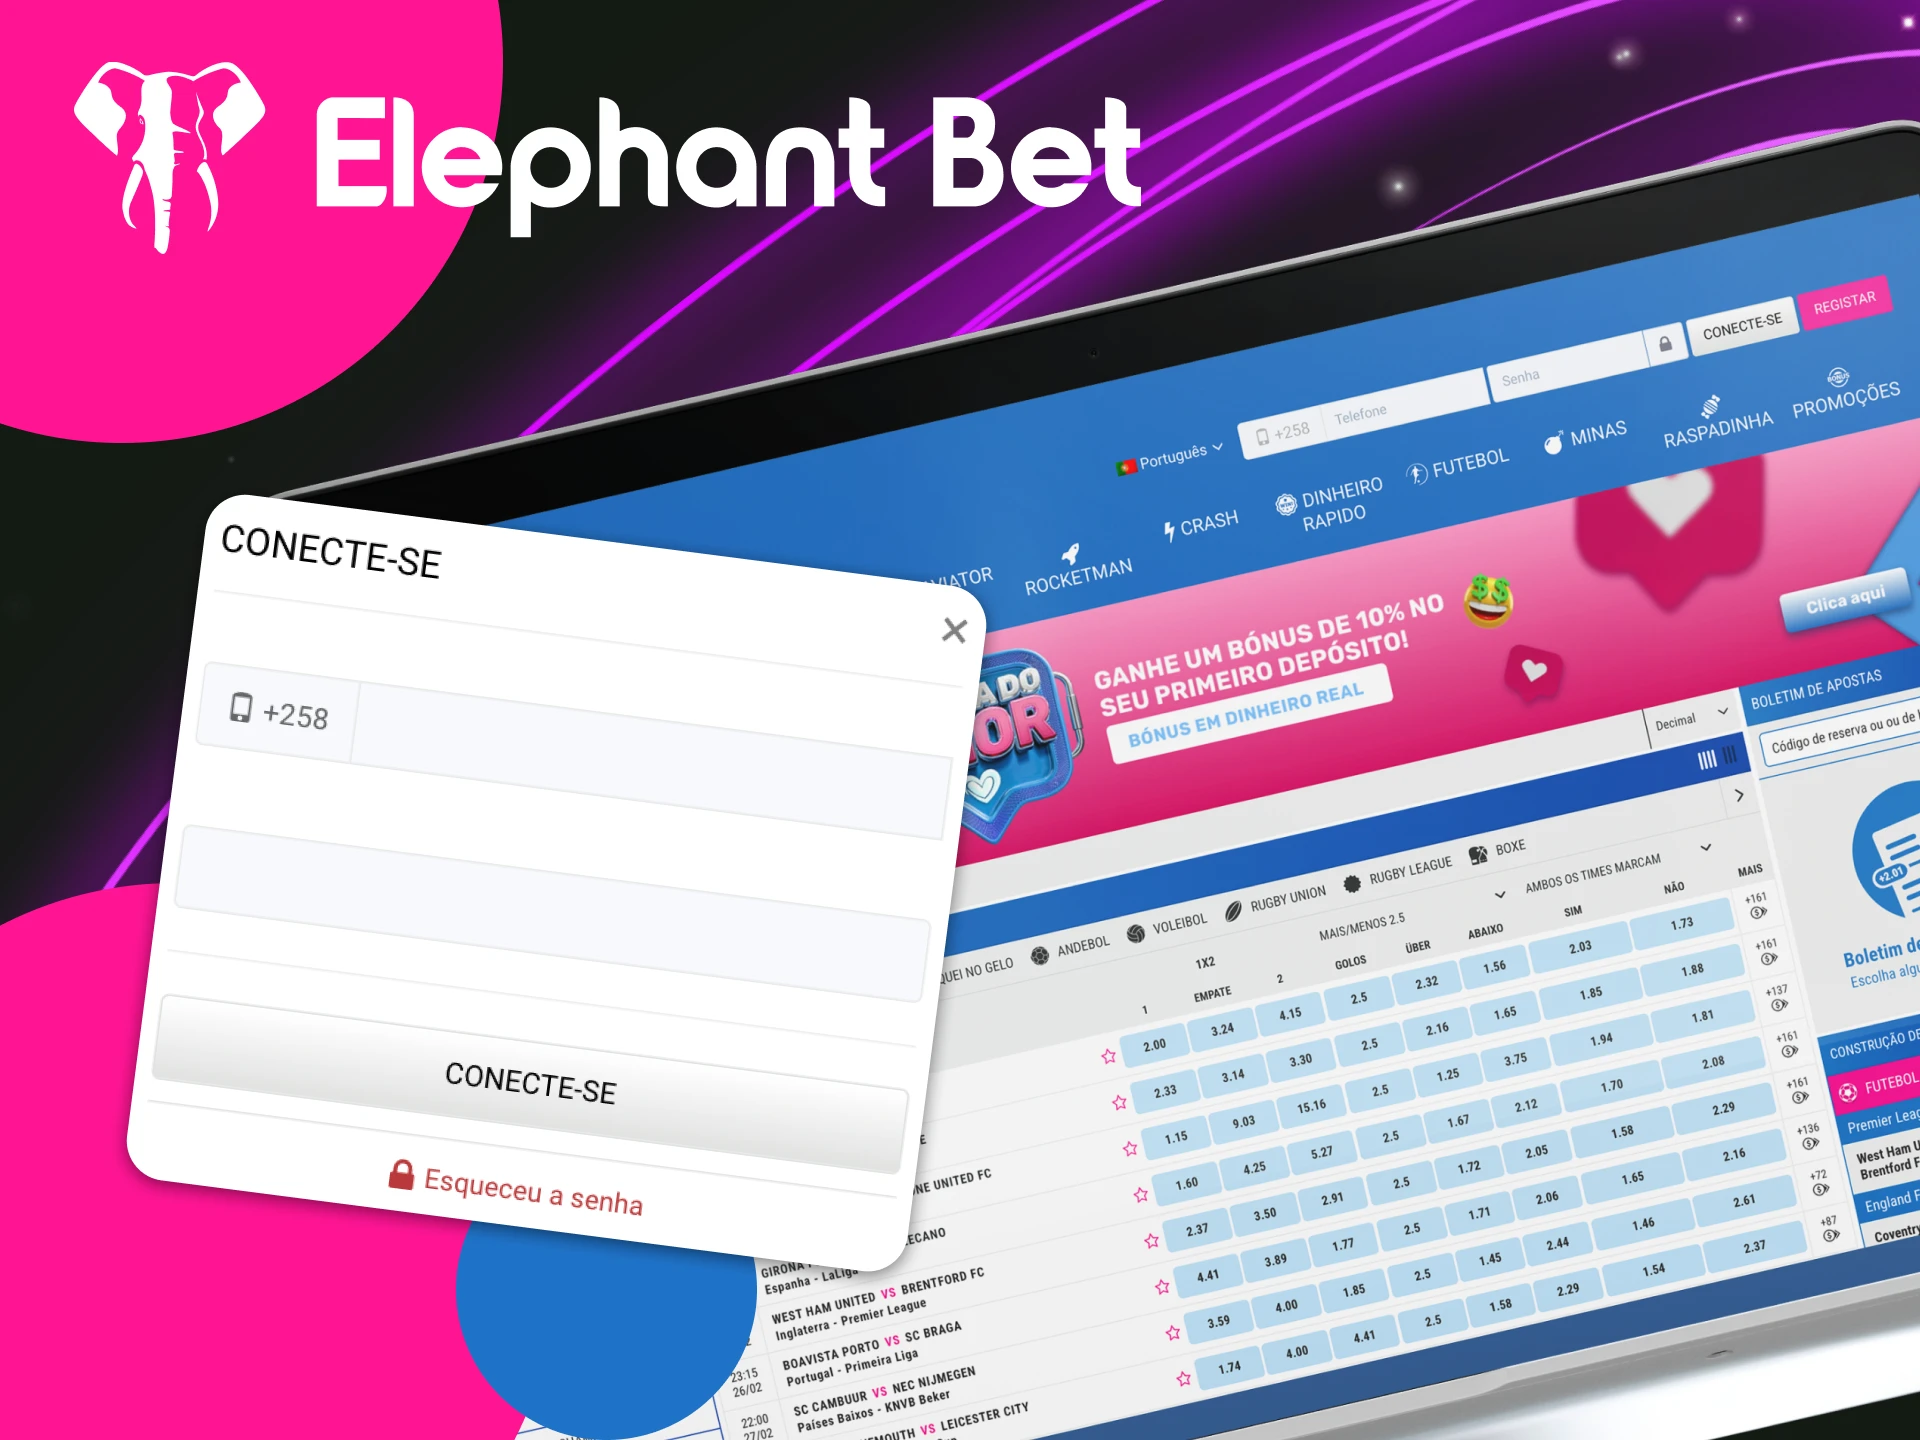 Instruções sobre como fazer login no site do cassino online Elephant Bet.